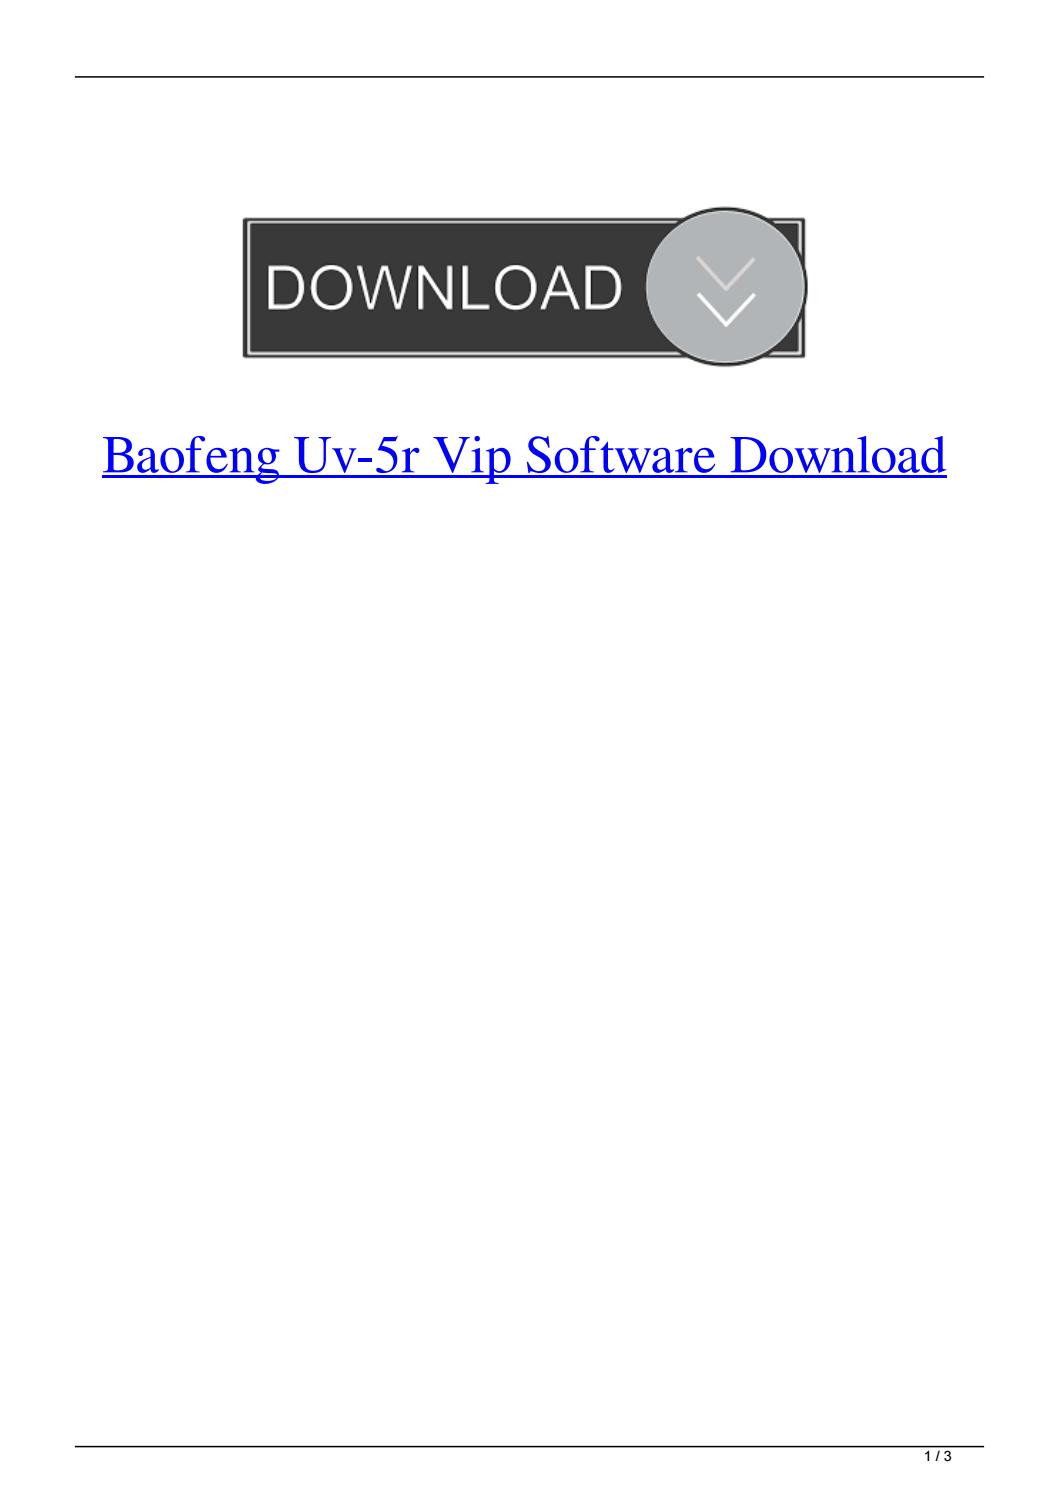 baofeng programming software mac